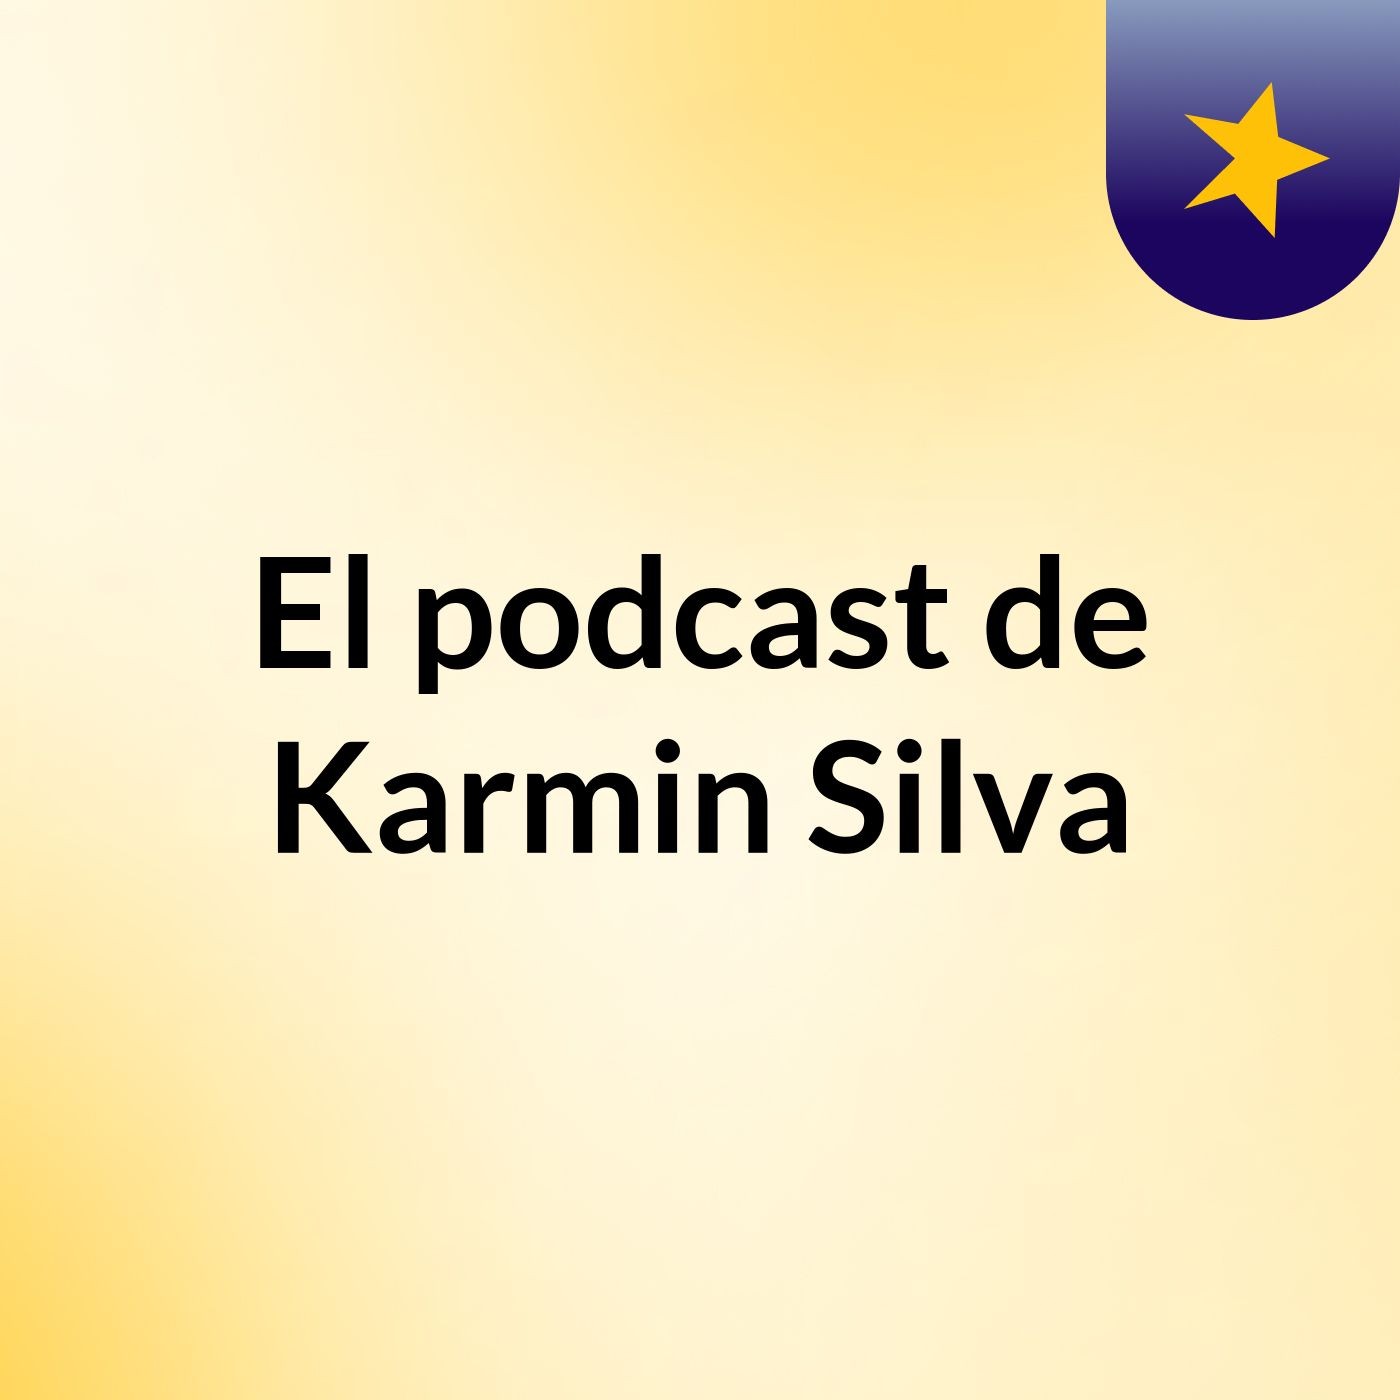 El podcast de Karmin Silva